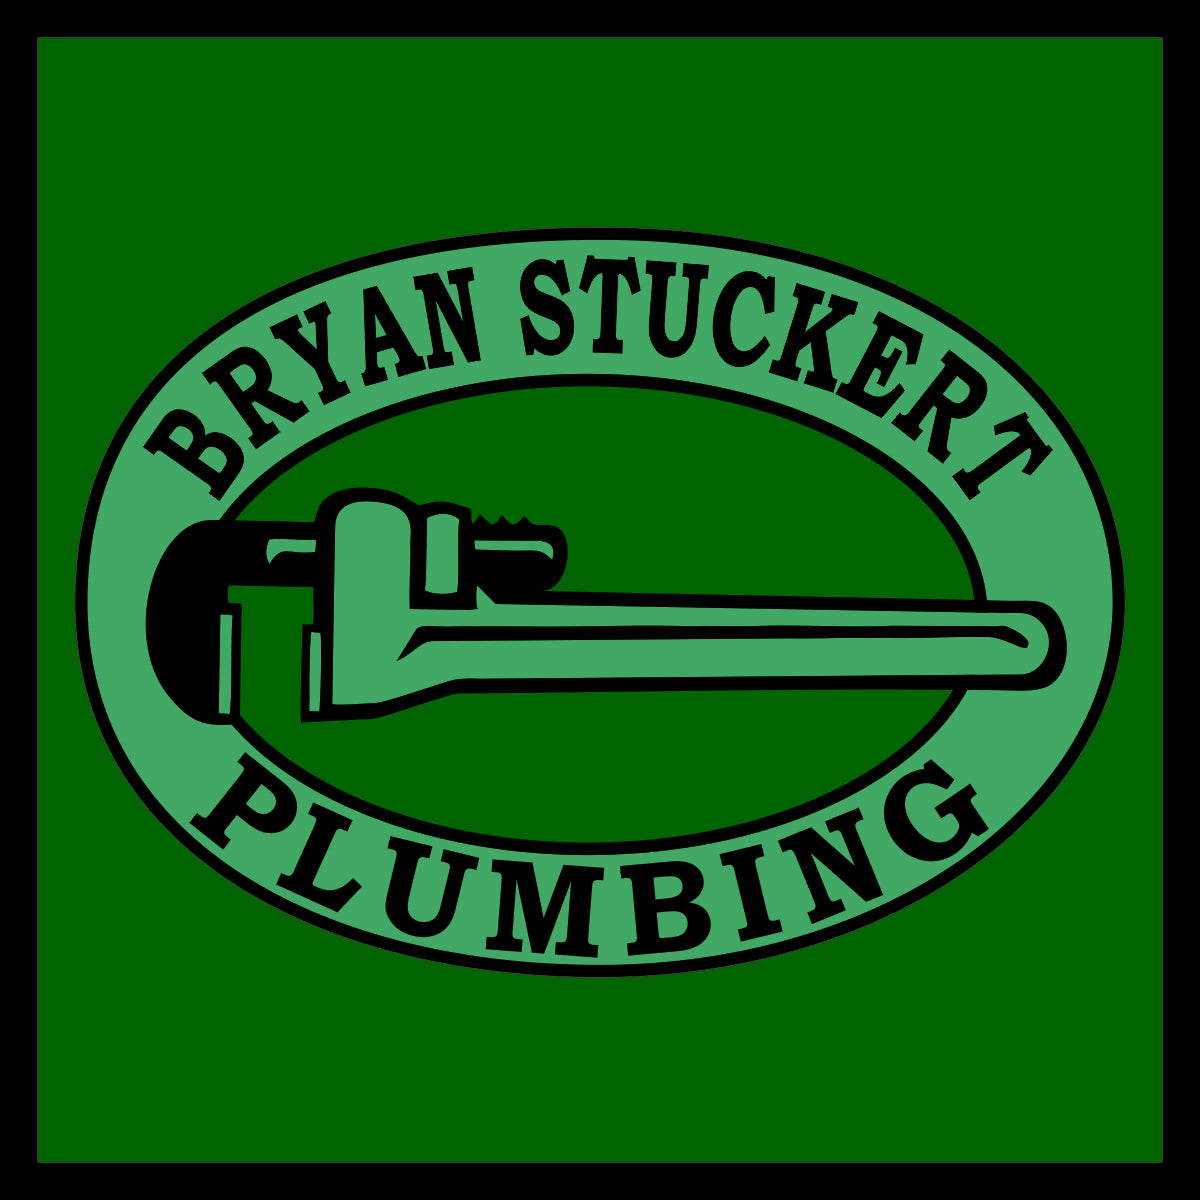 Bryan Stuckert Plumbing 2 §